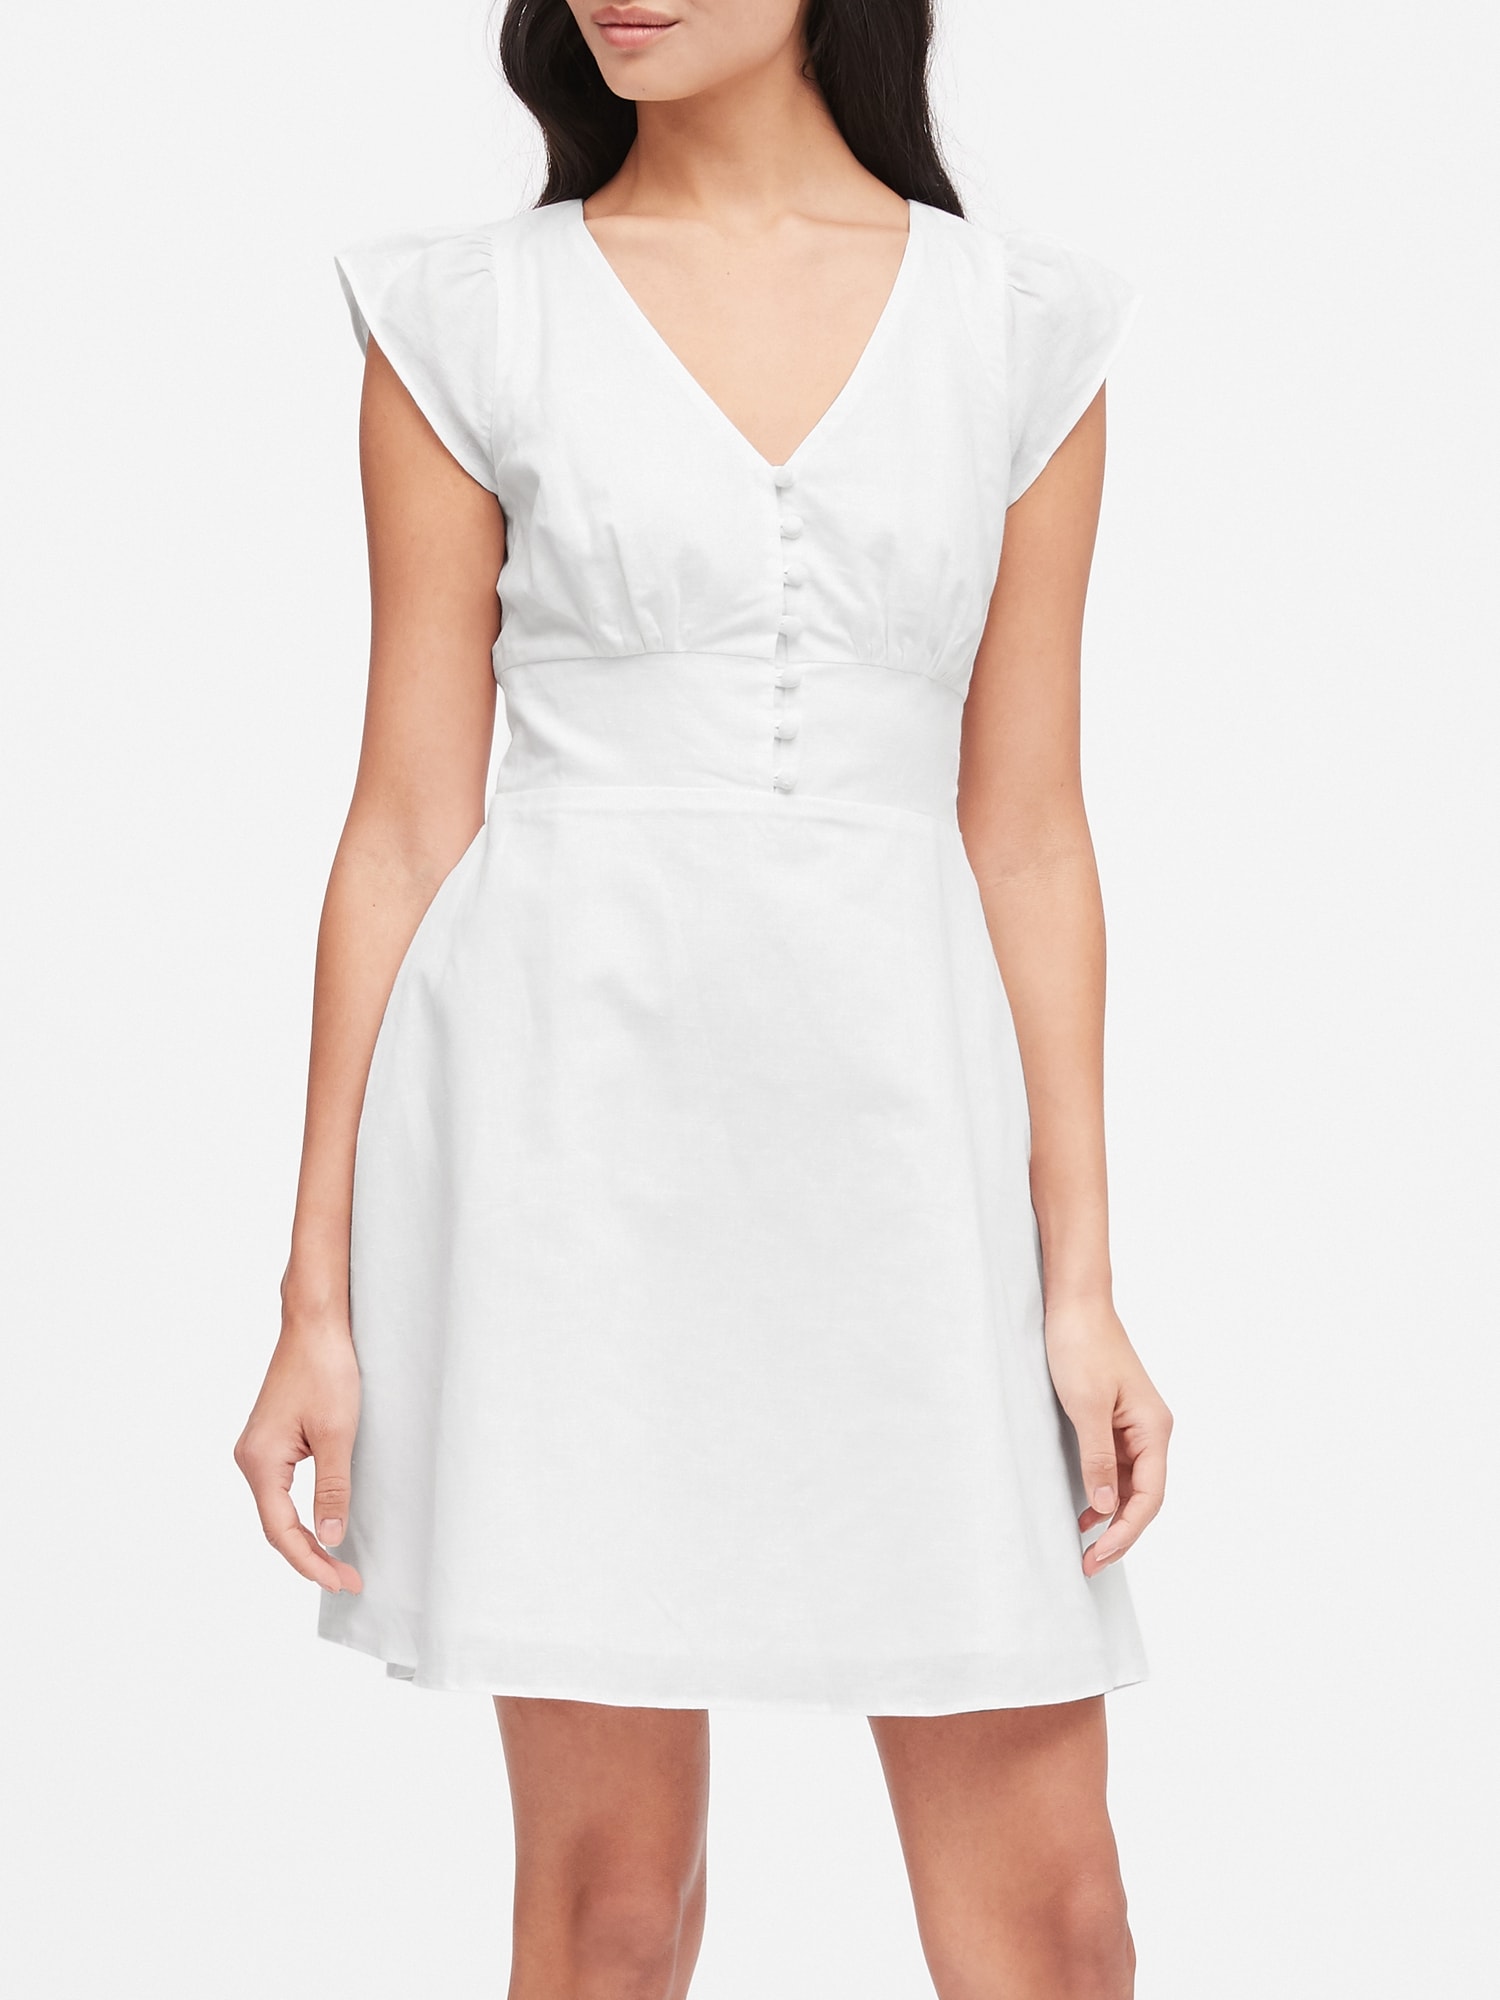 petite white mini dress